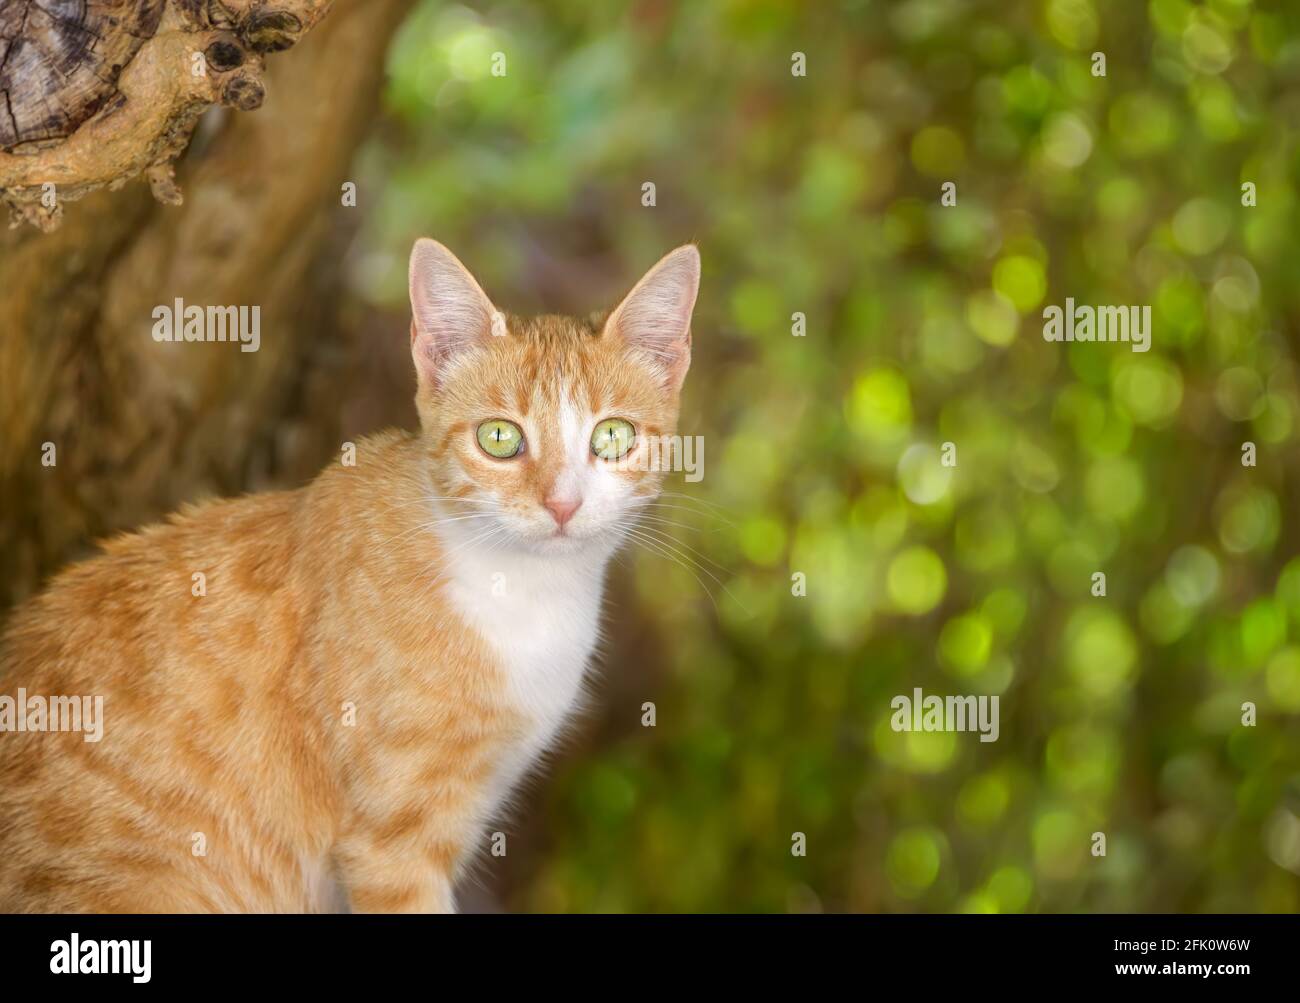 Carino giovane gatto ritratto, tabby rosso con occhi bianchi e geen, aspetto curioso con foglie verdi bokeh sfondo Foto Stock